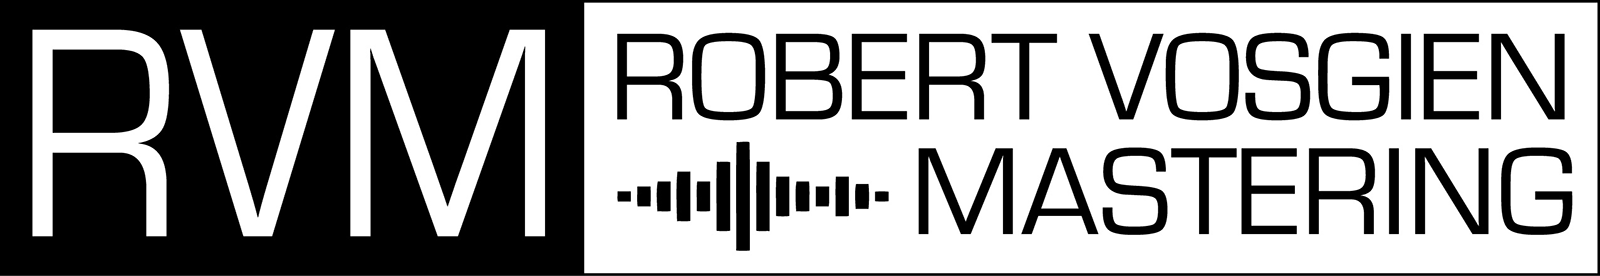 Robert Vosgien Mastering